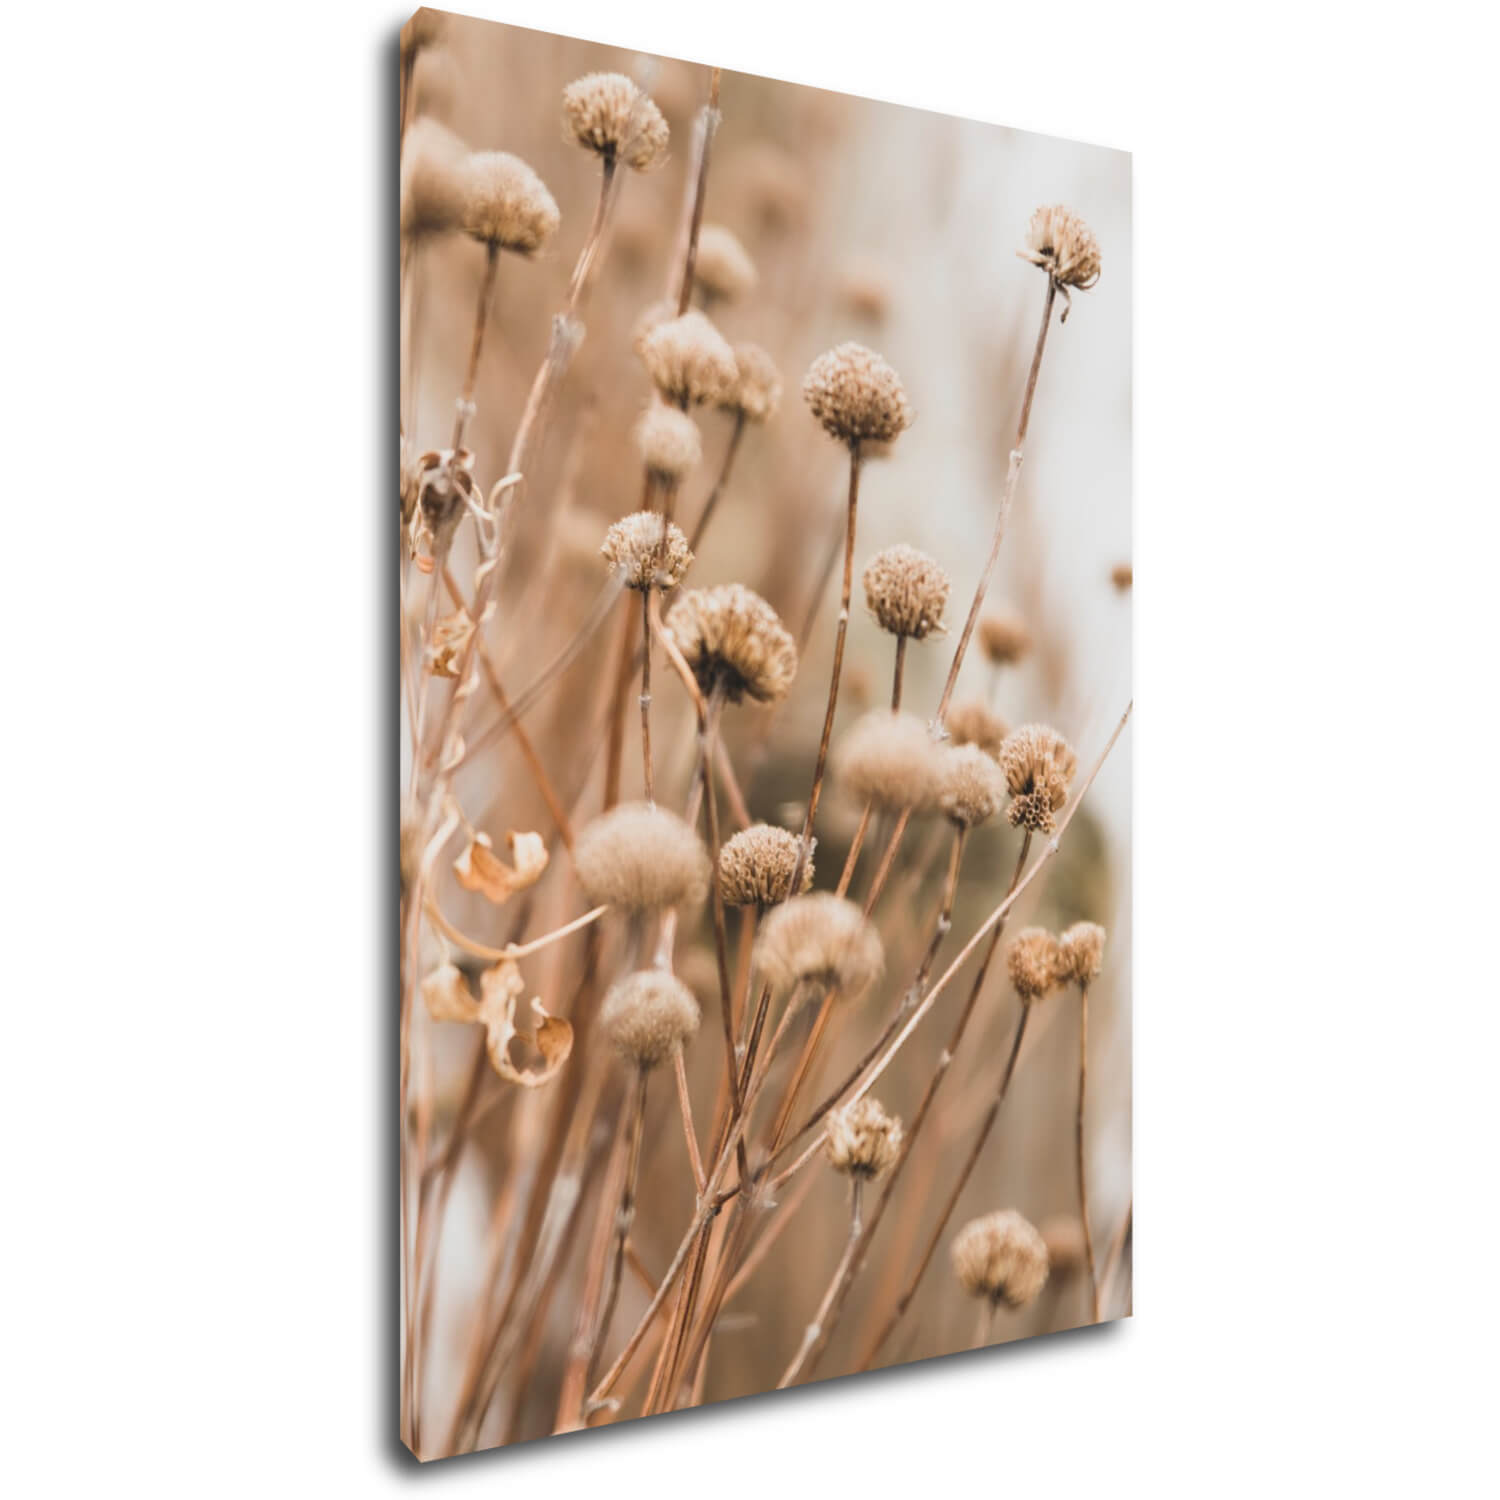 Obraz Škandinávsky štýl suchá tráva - 50 x 70 cm